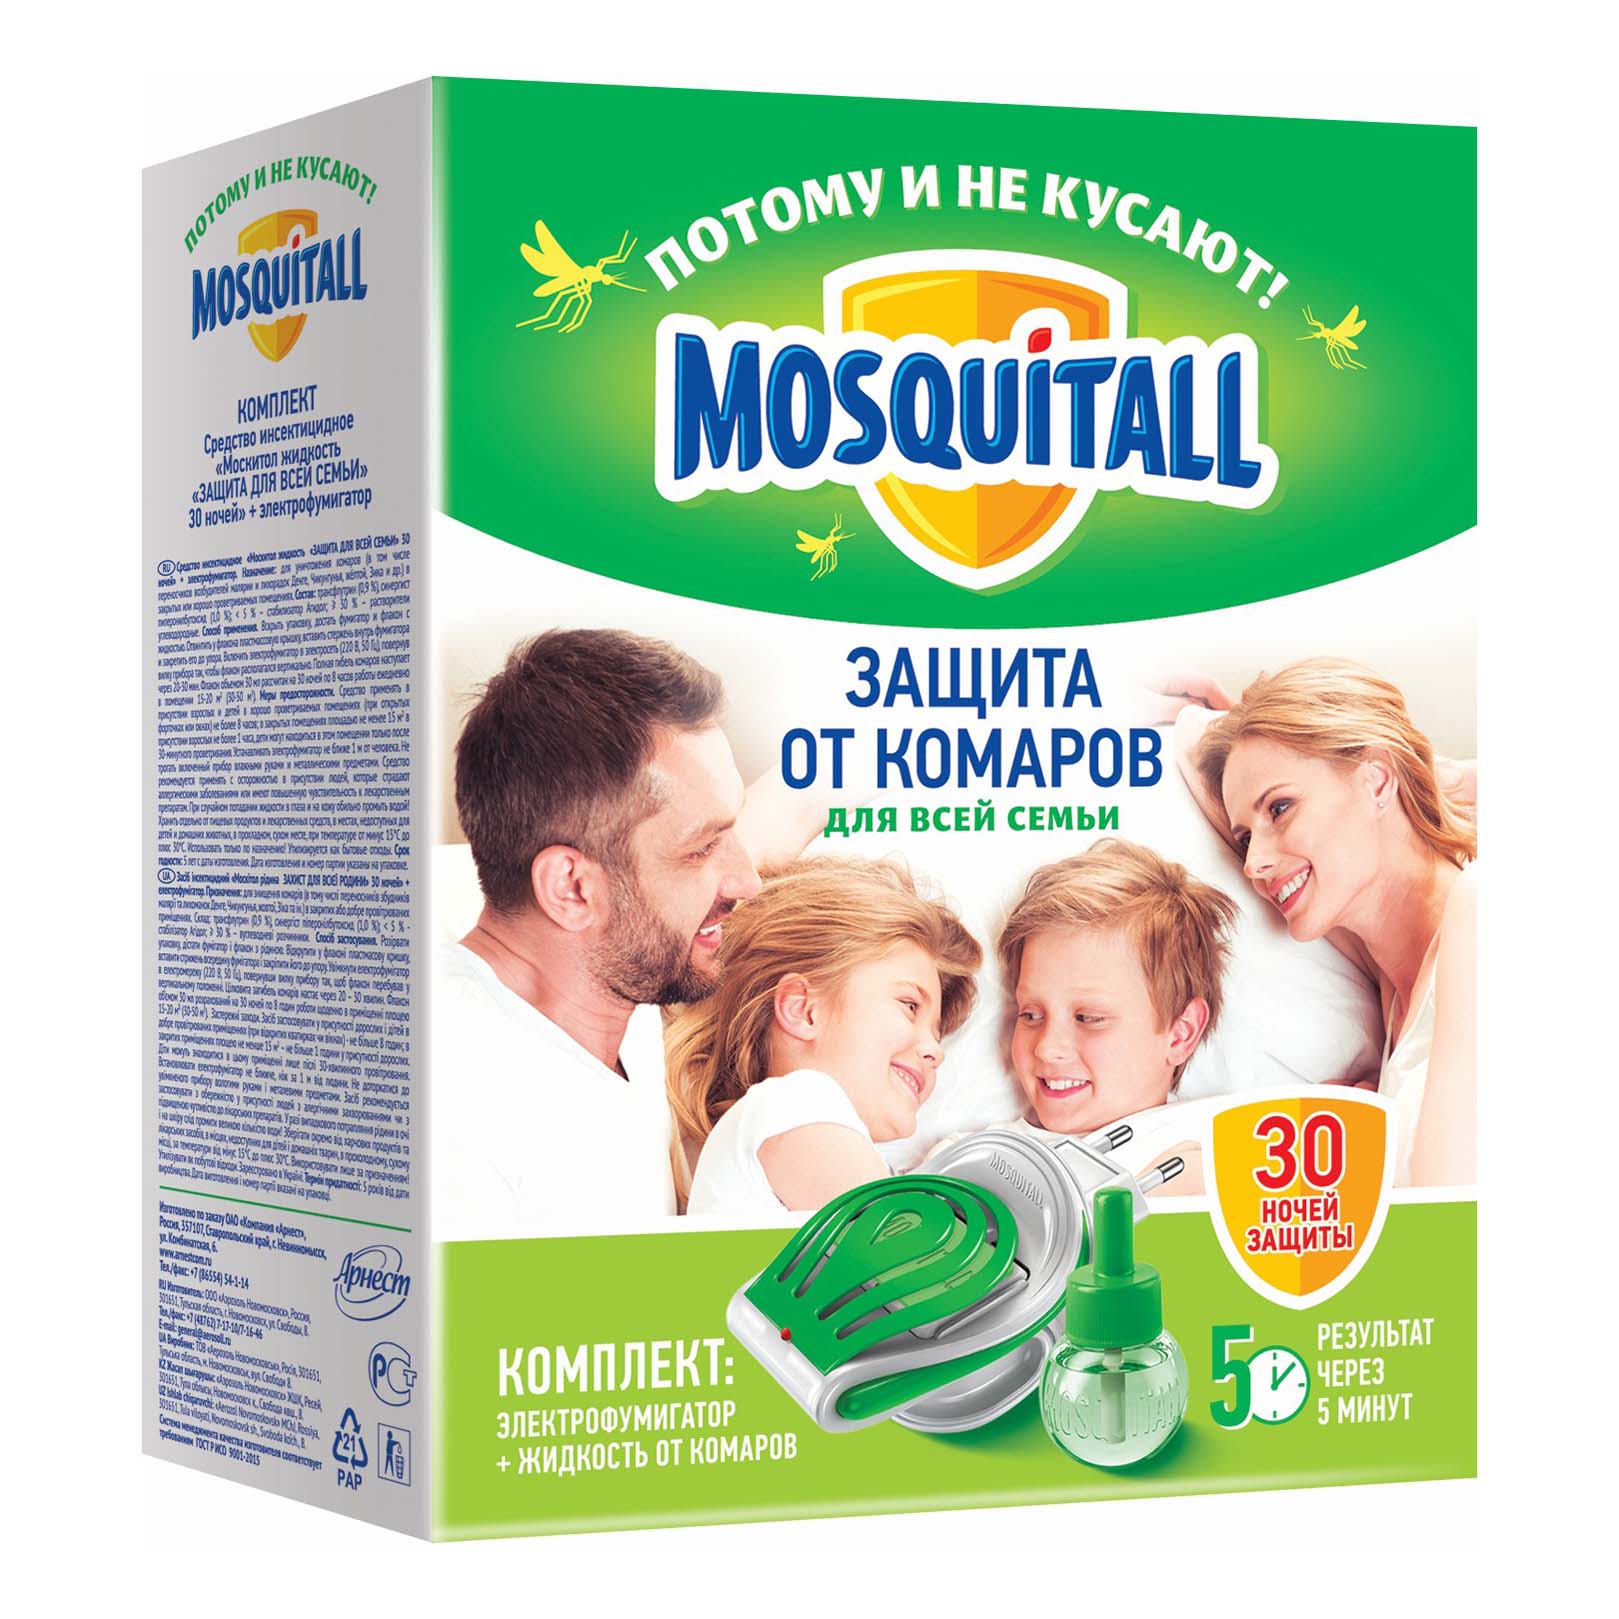 

Набор от комаров Mosquitall Защита для всей семьи 30 ночей, Зеленый